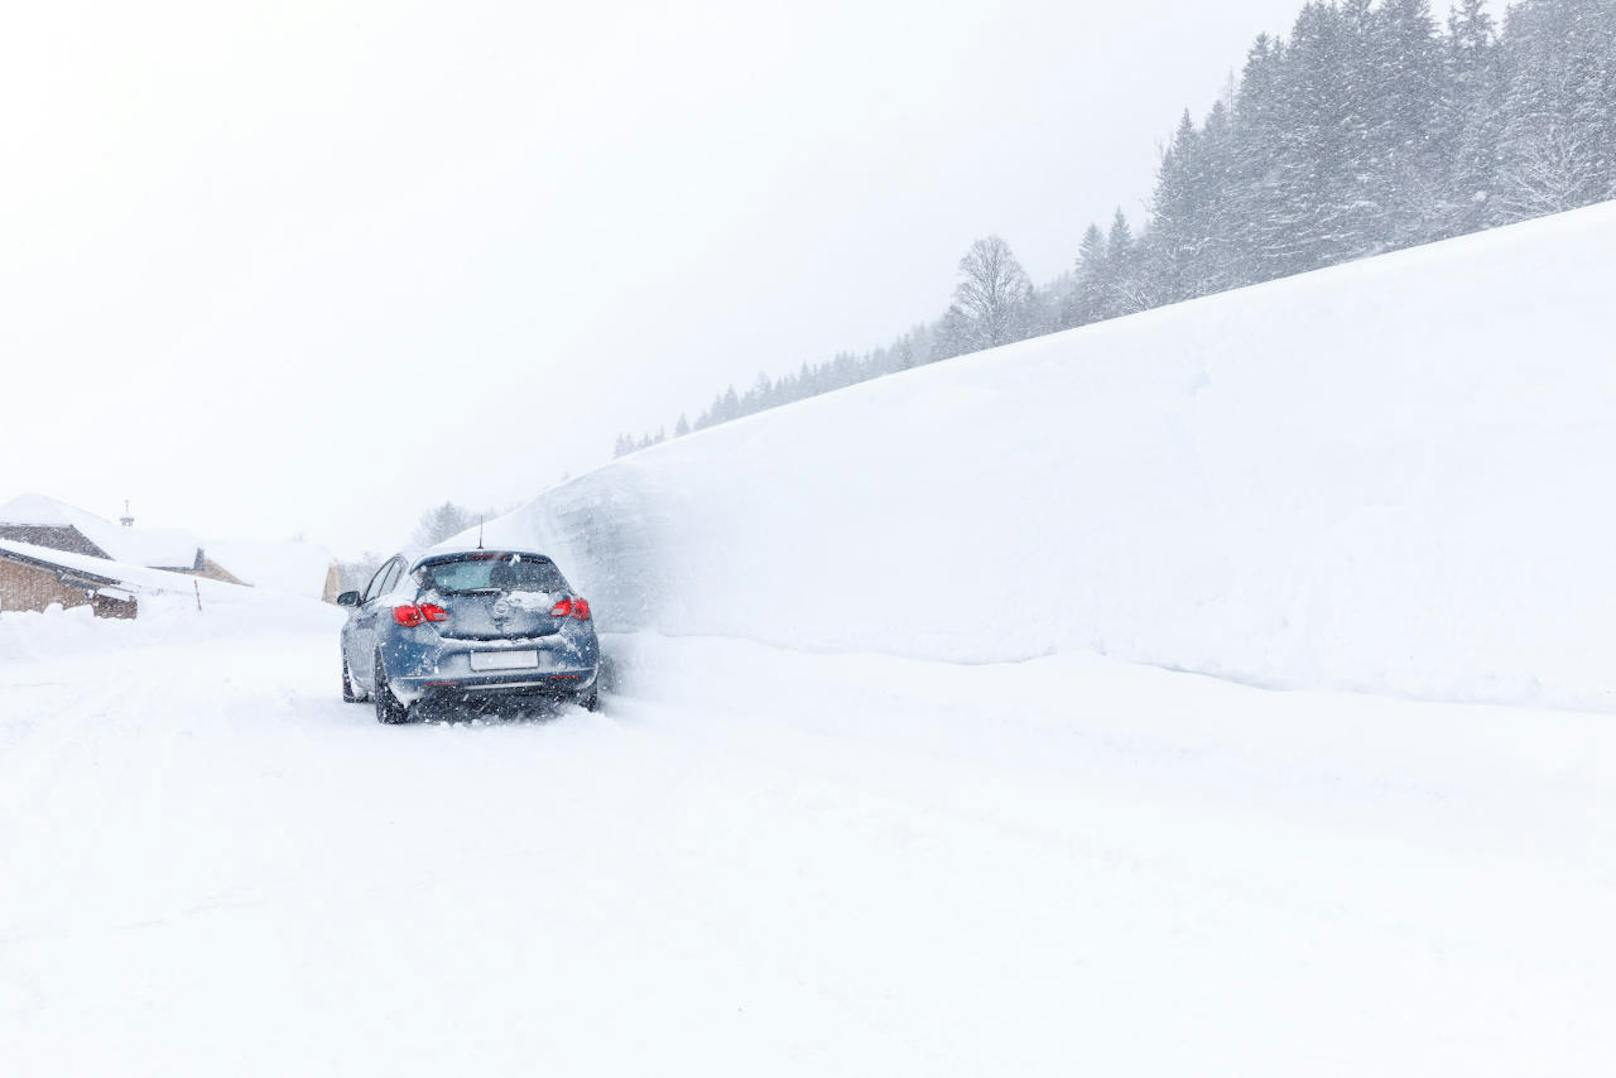 In der Steiermark sorgt heftiger Schneefall seit Sonntag (6.1.) für Behinderungen im öffentlichen Leben und im Straßenverkehr. Im Bild: Schladming.